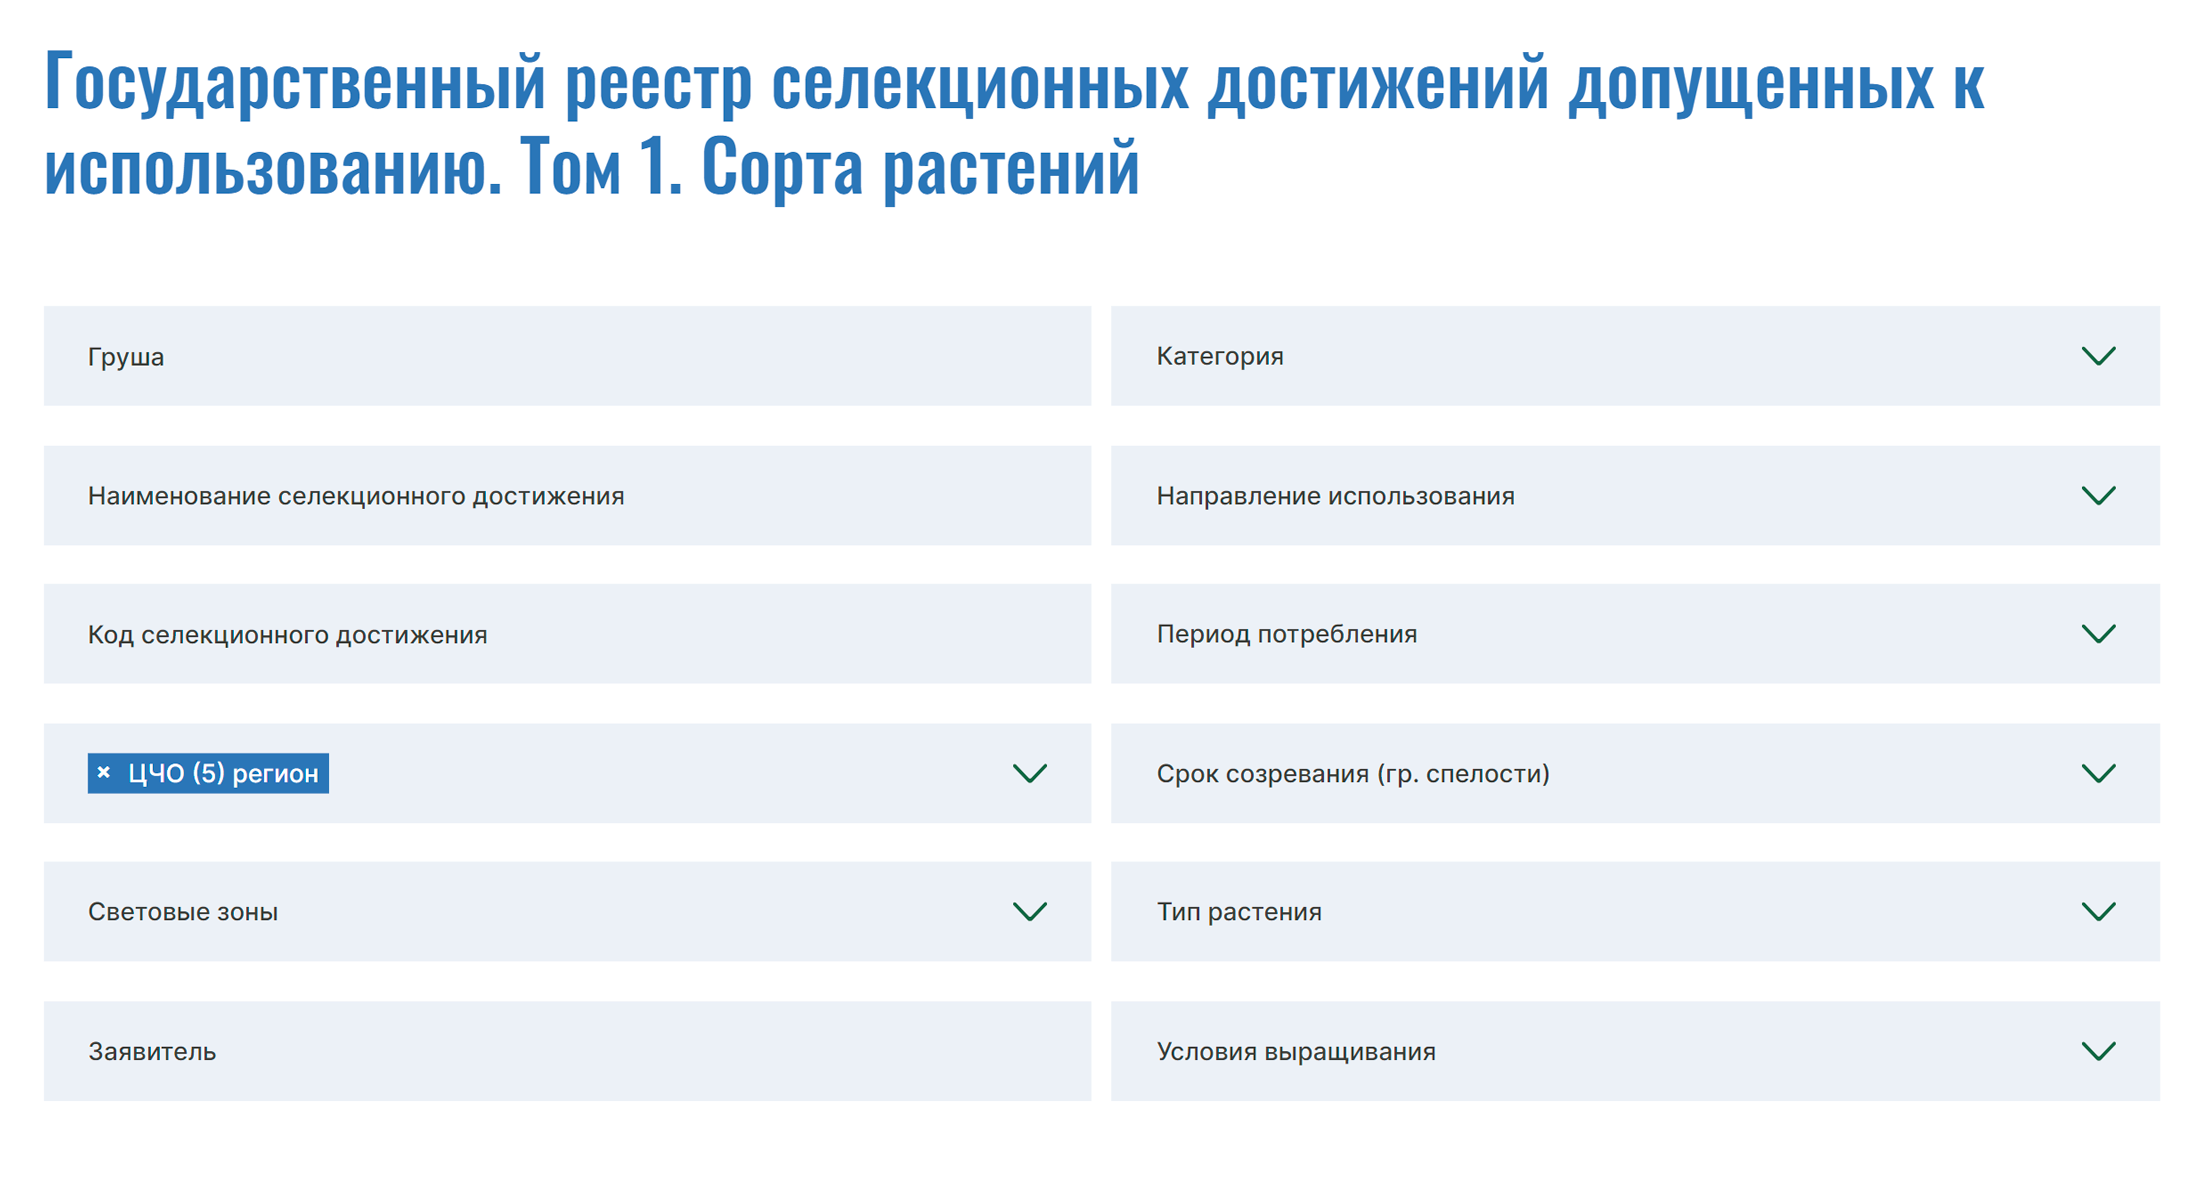 Осталось нажать на кнопку «искать», чтобы получить список сортов груш, которые рекомендовано сажать в Центрально-Черноземном регионе. Источник: gossortrf.ru